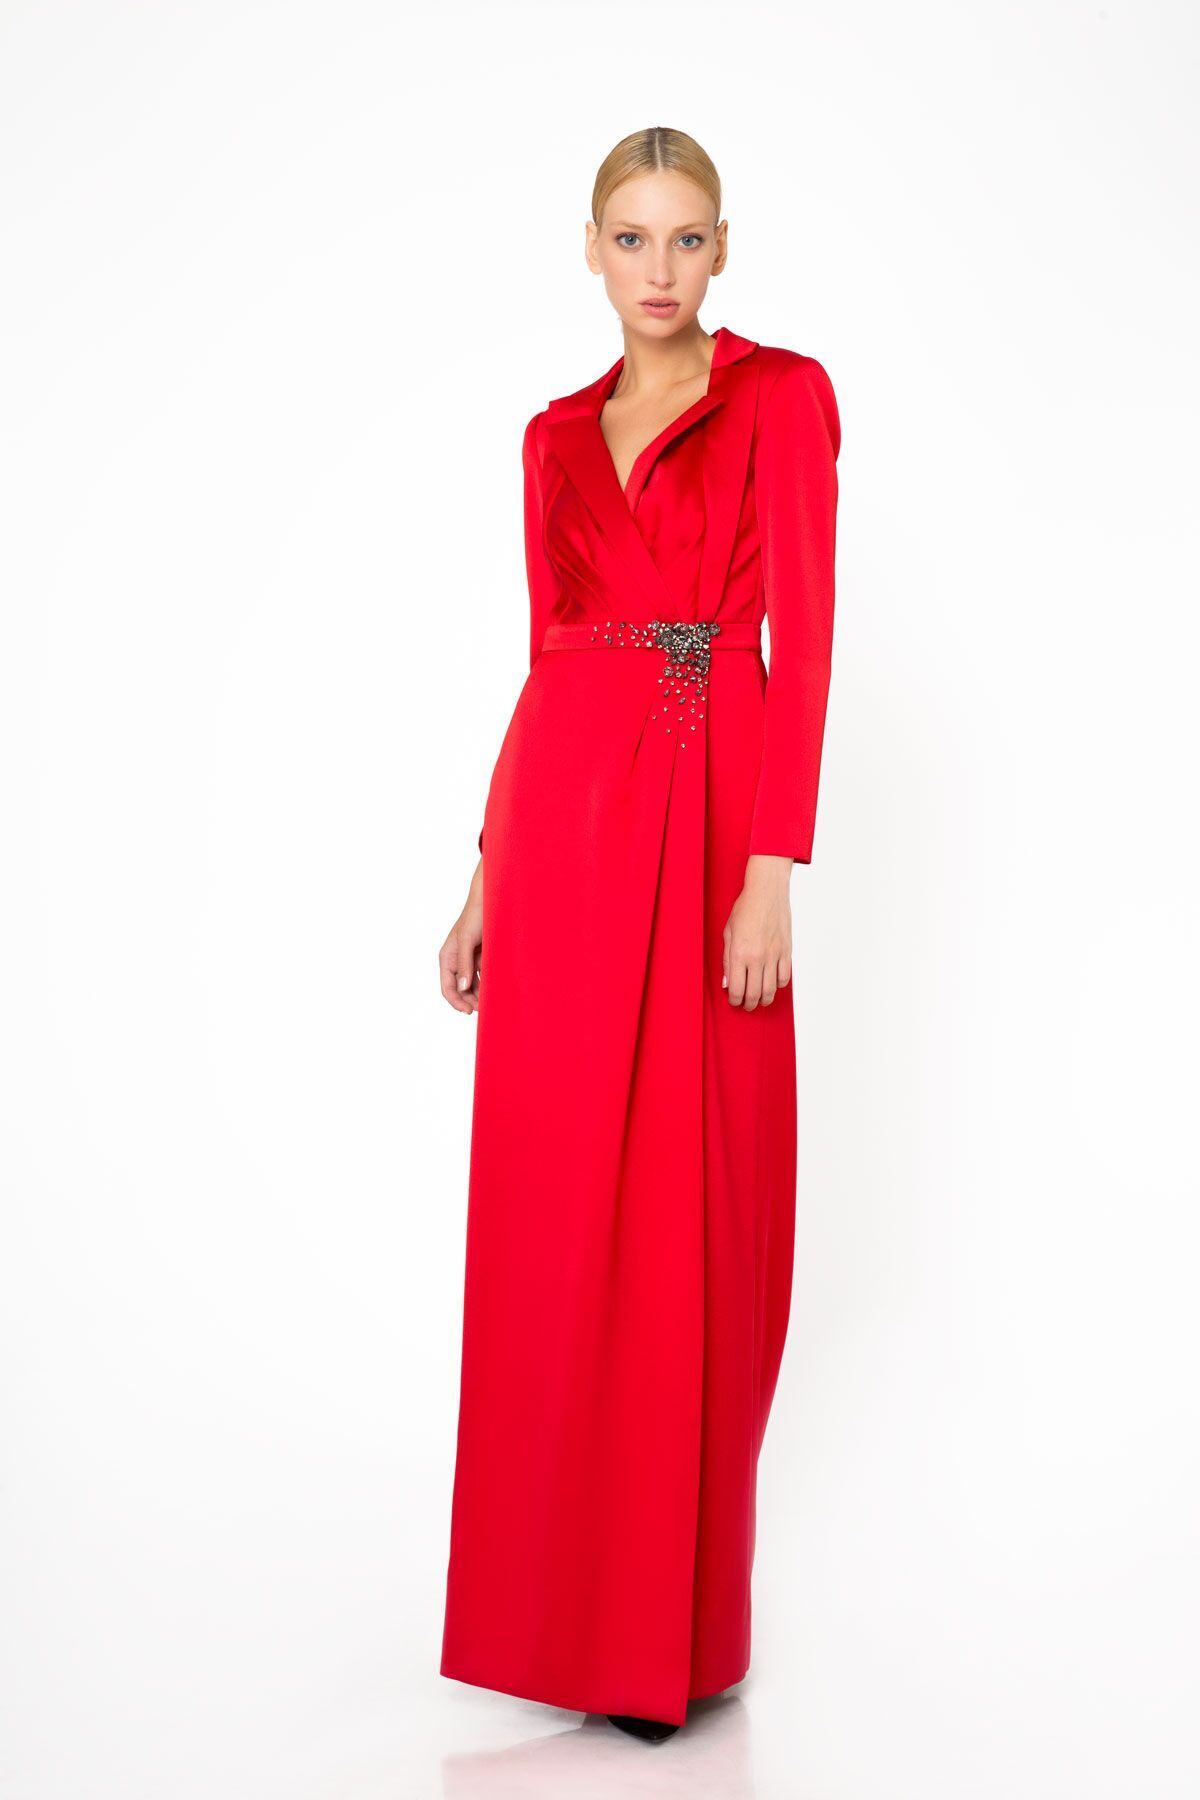 GIZIA Taş İşleme Detaylı Kırmızı Uzun Gece Elbisesi